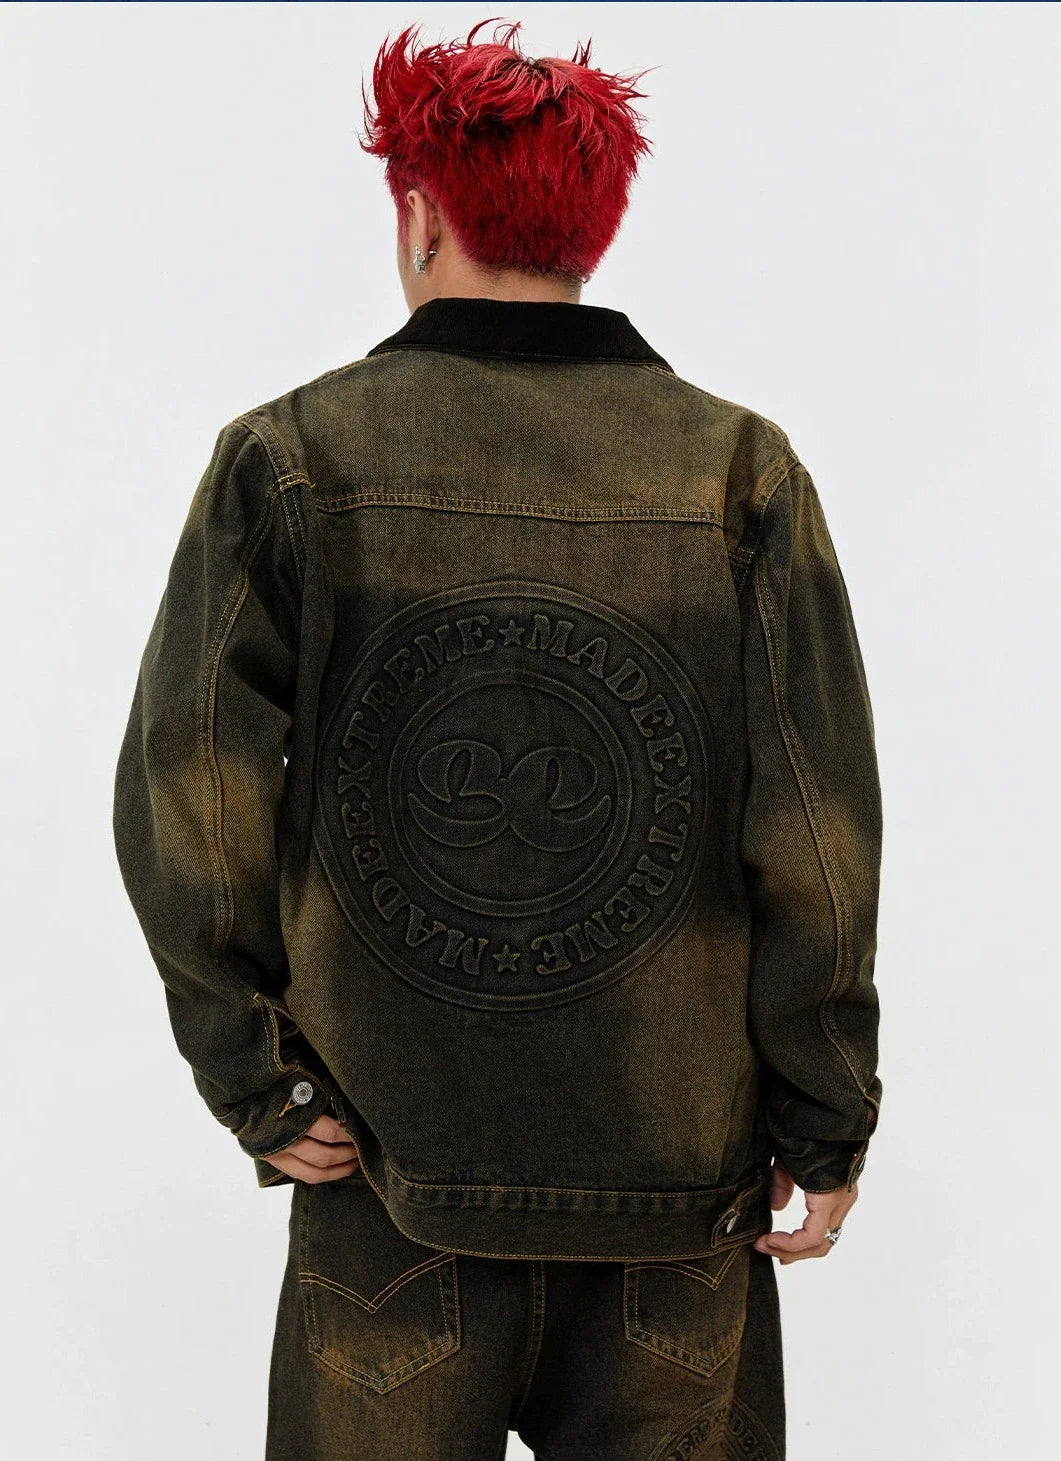 Washed Breast Pocket Denim Jacket Korean Street Fashion Jacket By Made Extreme Shop Online at OH Vault